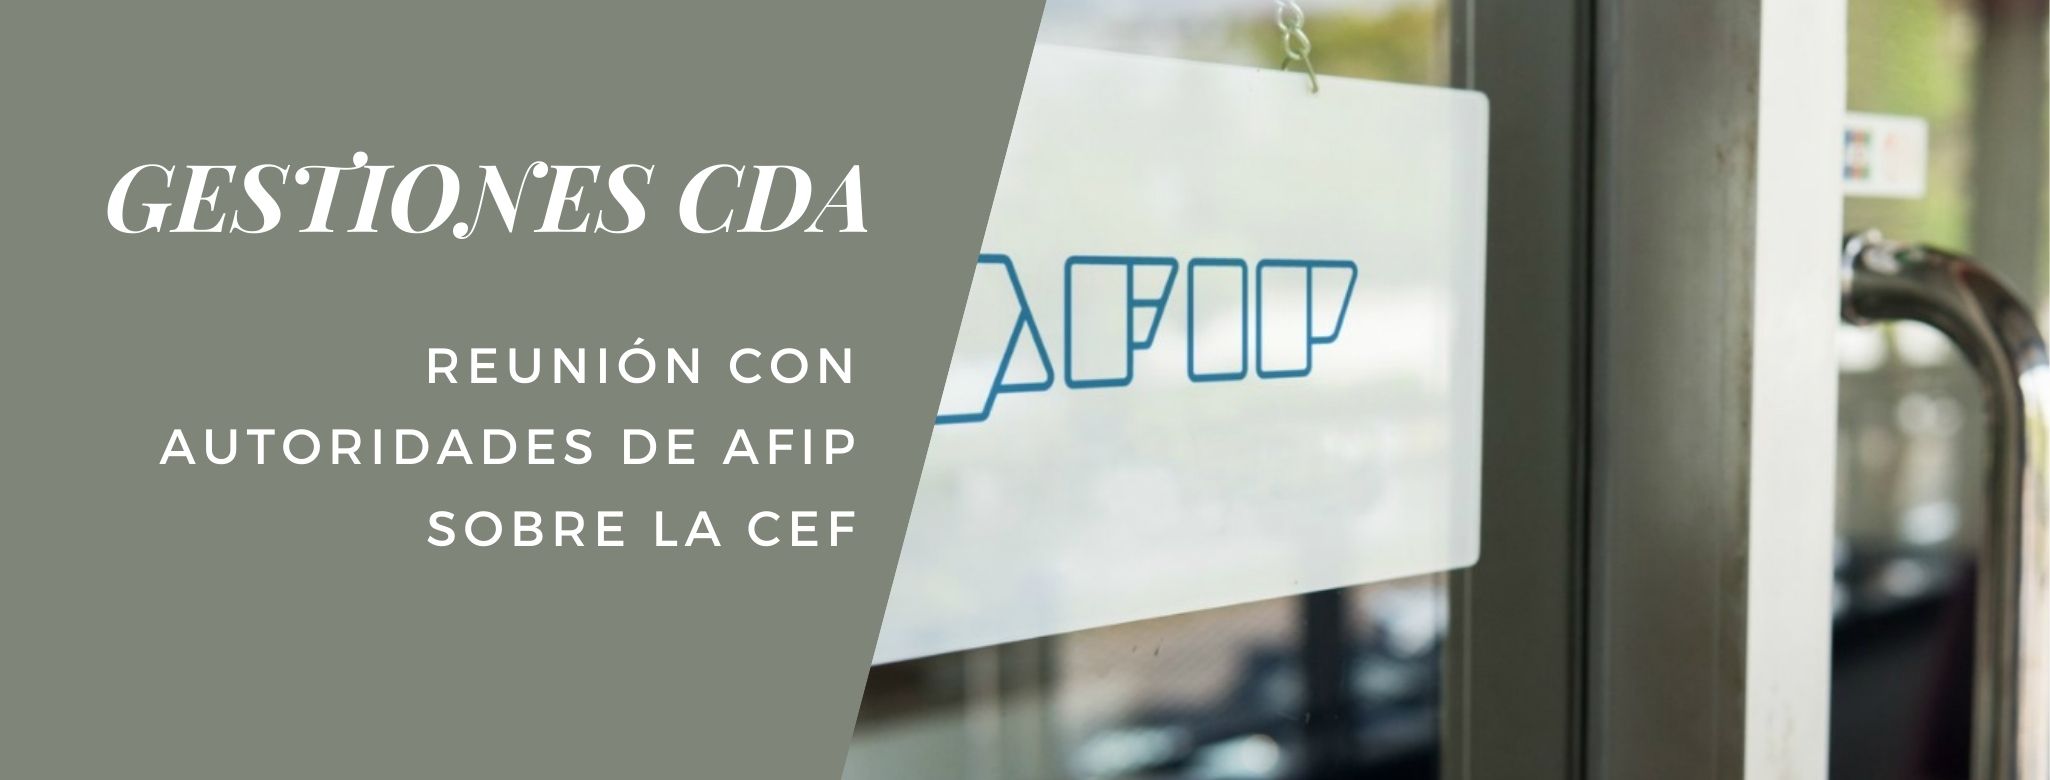 GESTIONES CDA: Reunión con autoridades de AFIP sobre la CEF